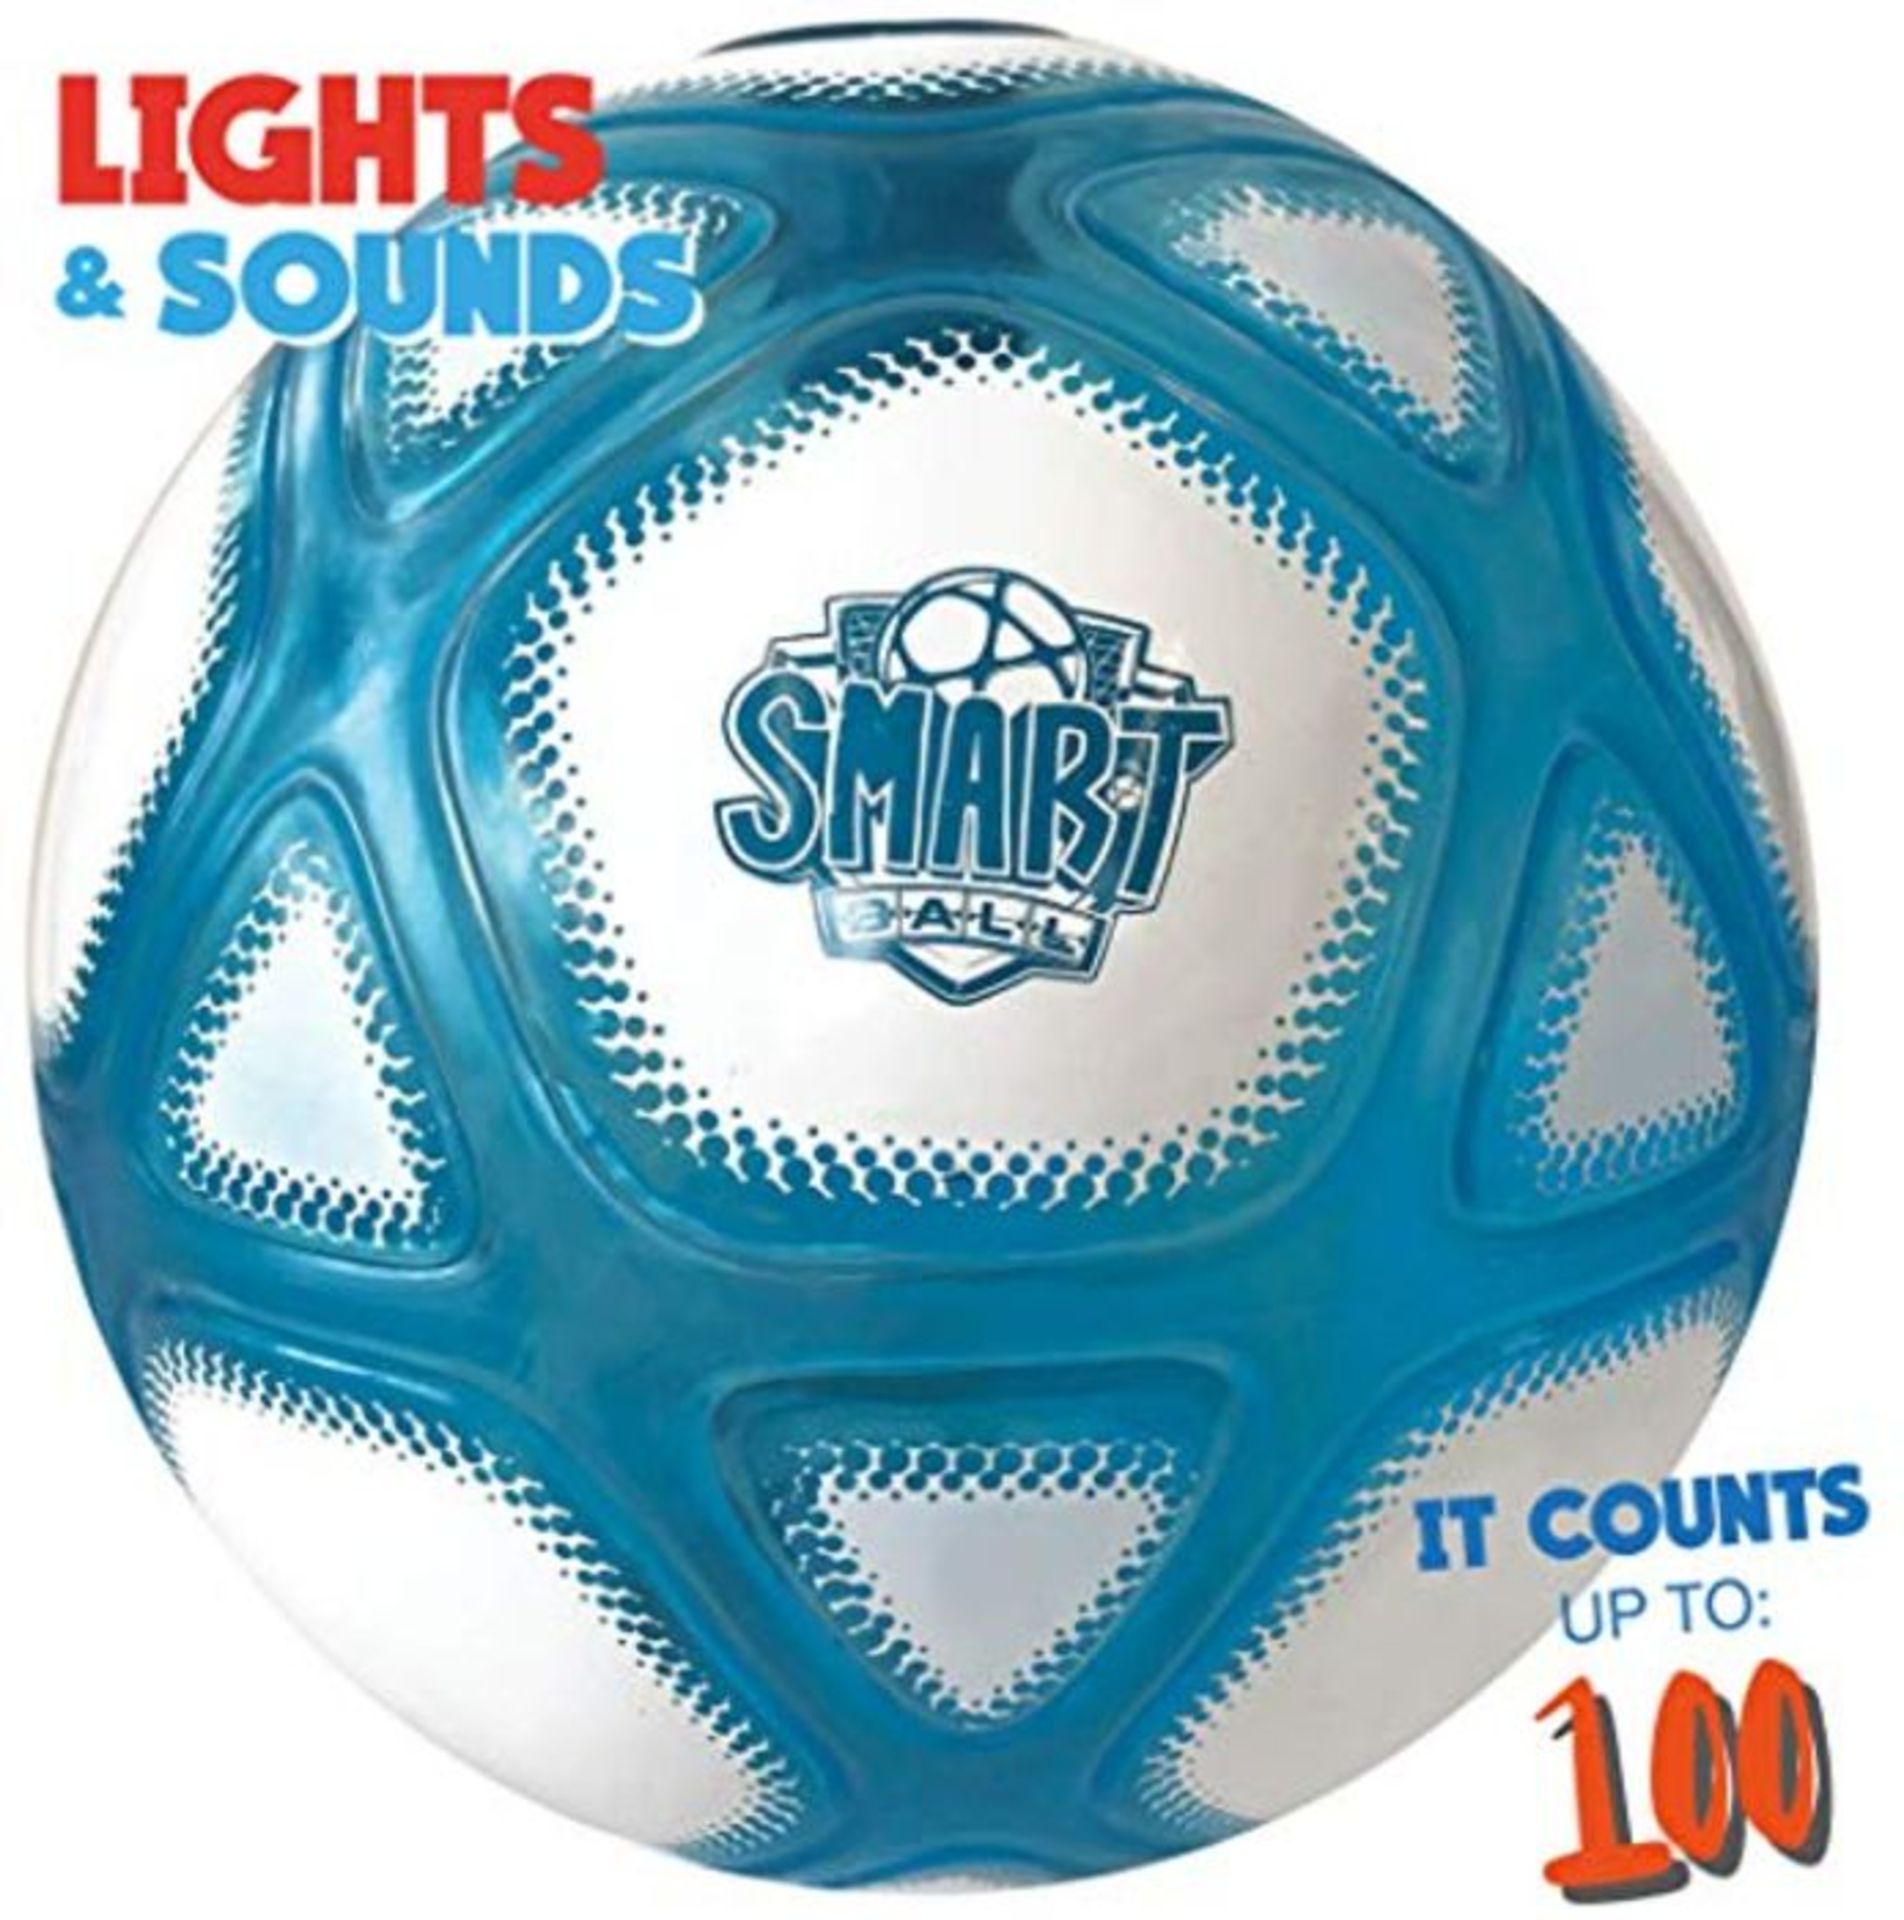 Smart Ball SBCB1B Football Gift for Boys Girls Age 3,4,5,6,7,8,9,10,12+ Years Old Kick